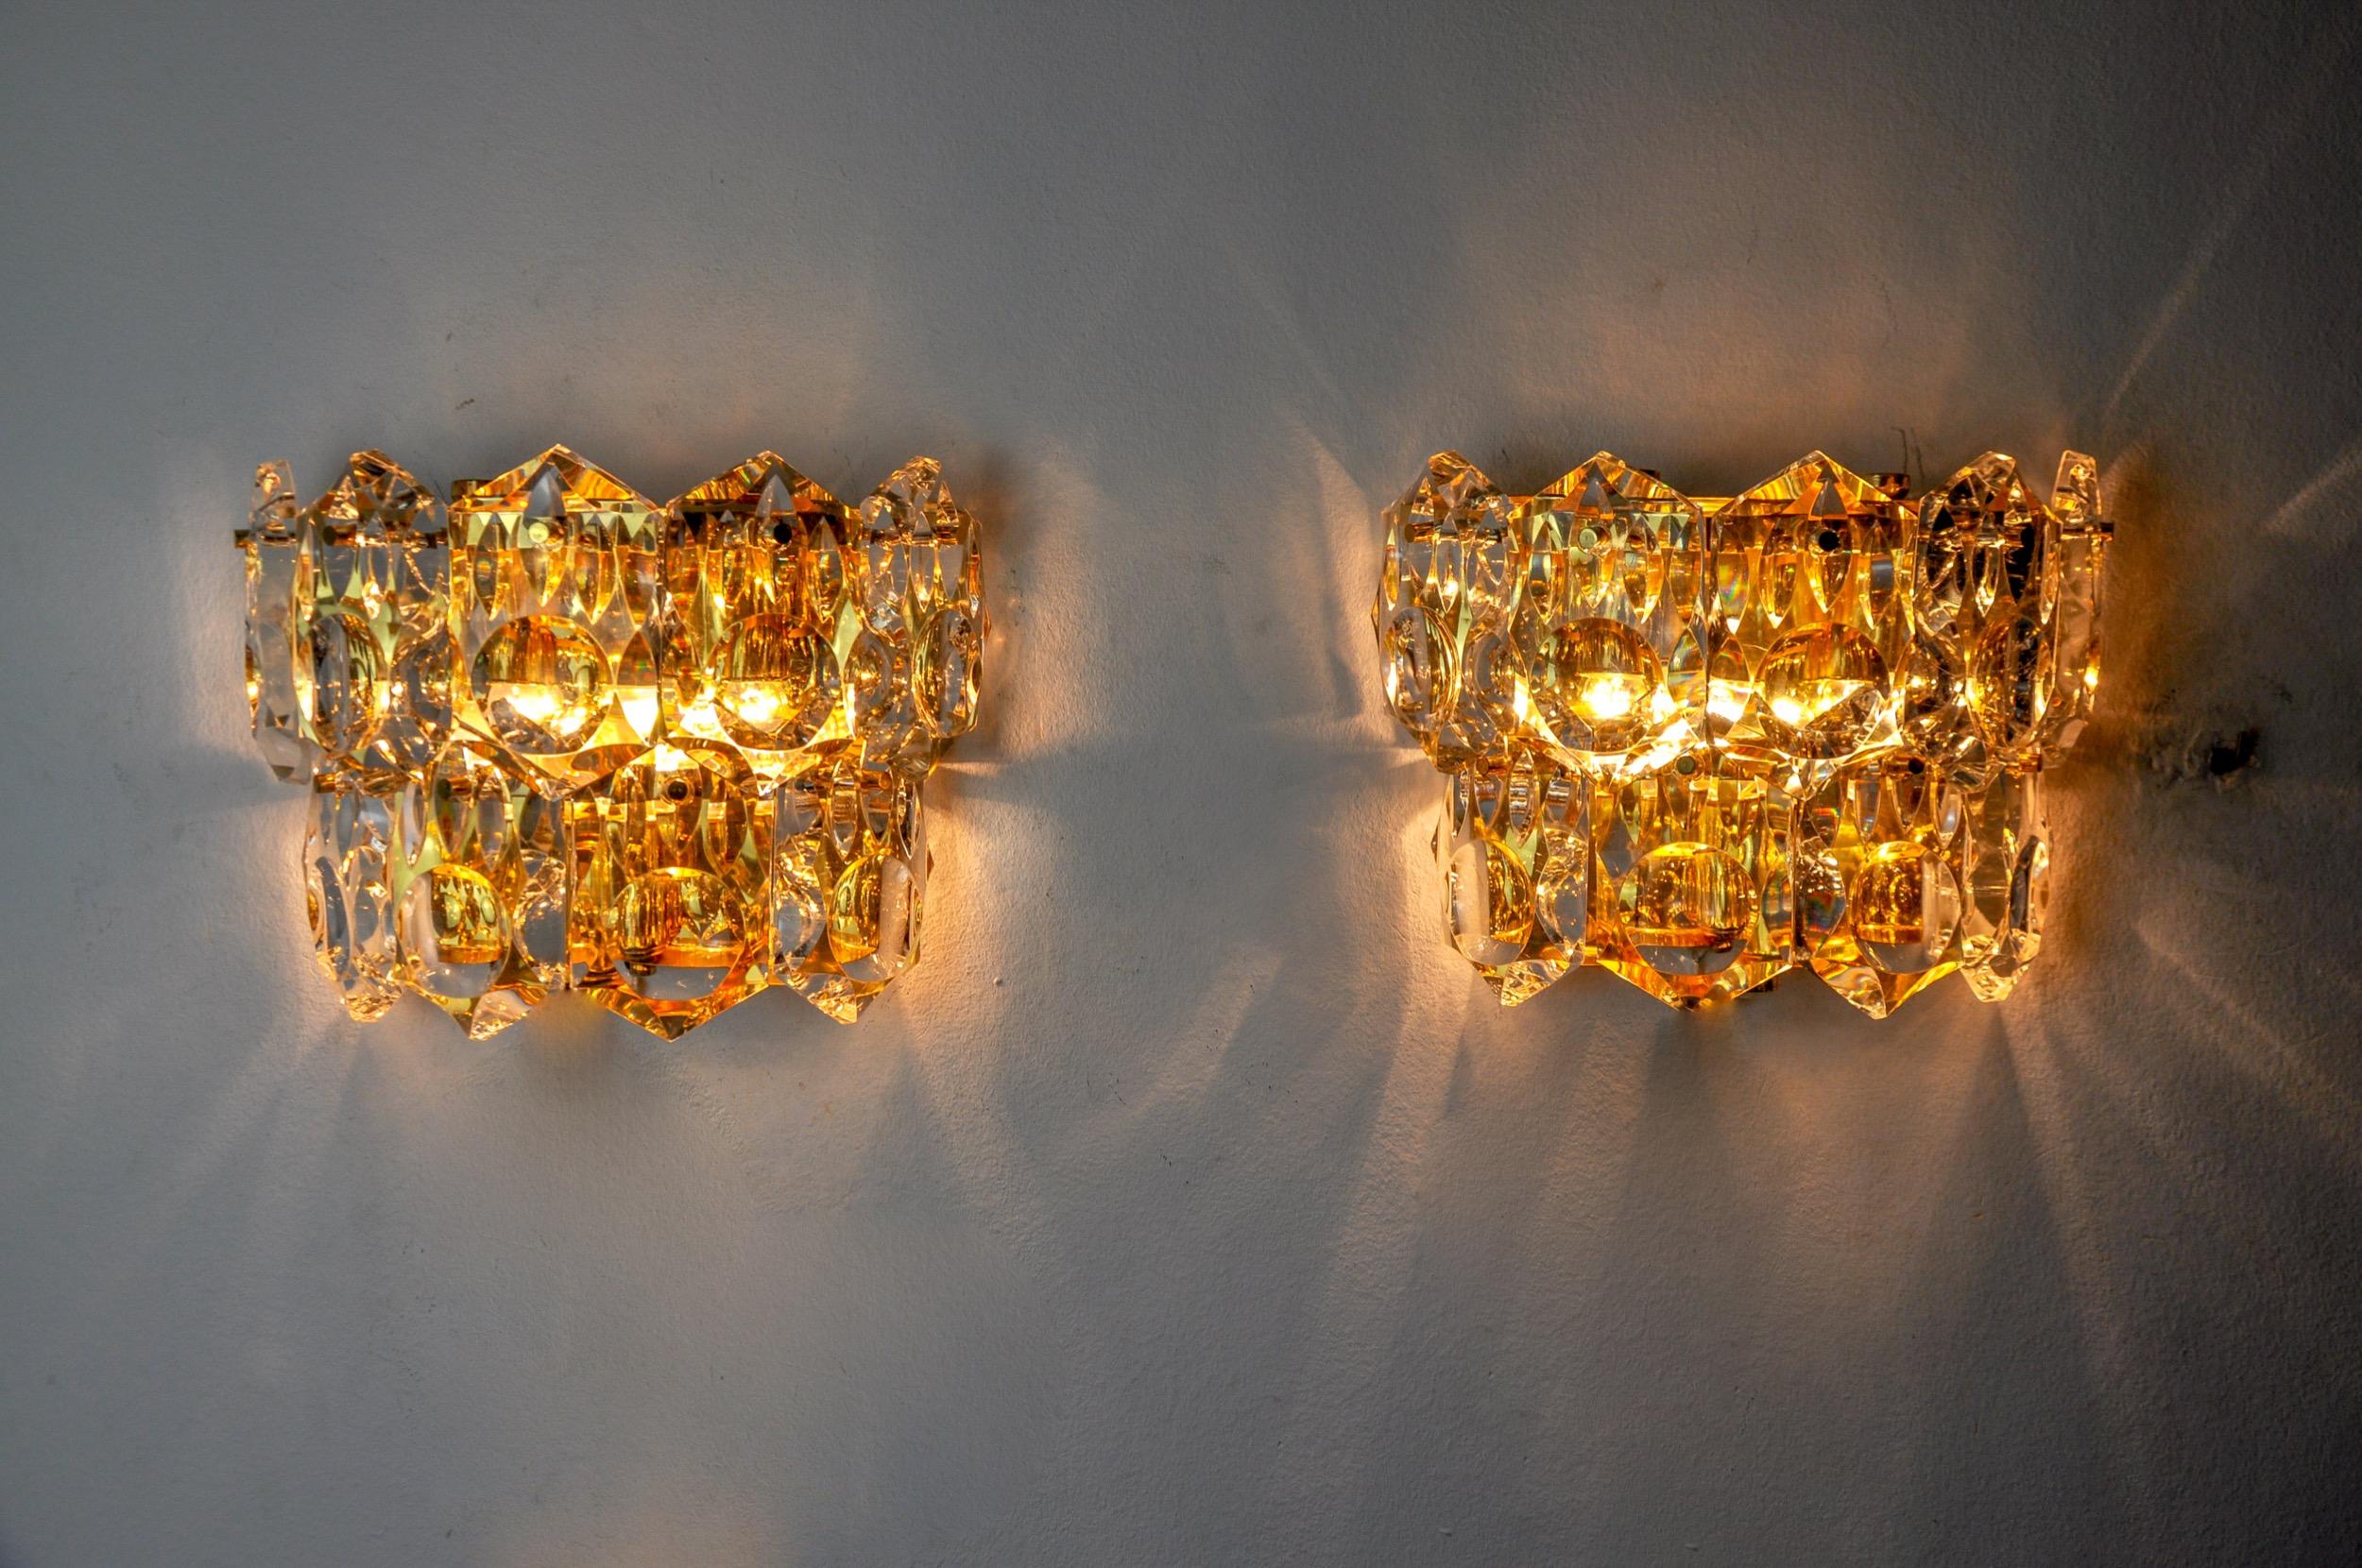 Sehr schönes und seltenes Paar Kinkeldey Wandleuchten, entworfen und hergestellt in Deutschland in den 1970er Jahren. Geschliffene Kristalle mit Vergrößerungseffekt, verteilt auf 2 Ebenen einer goldenen Metallstruktur. Ein seltenes Designobjekt, das